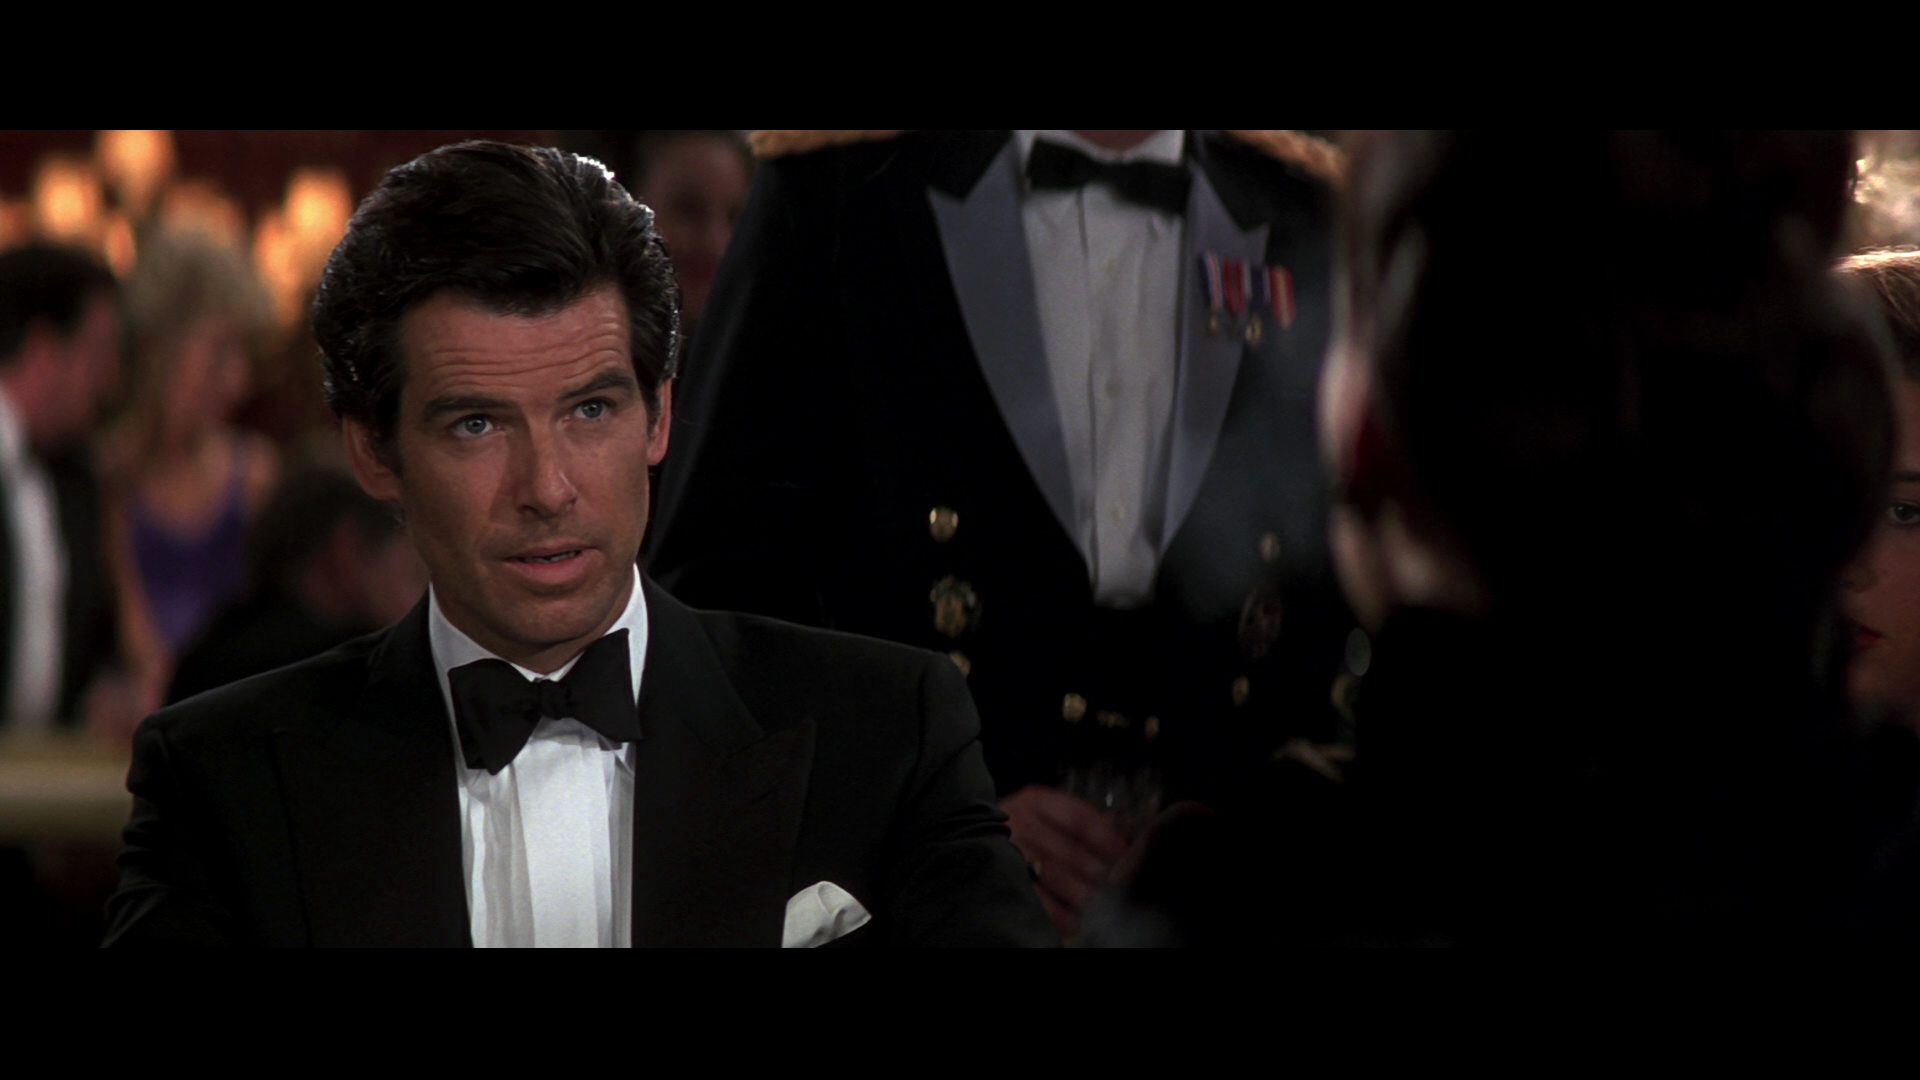 Pierce Brosnan as James Bond, 007